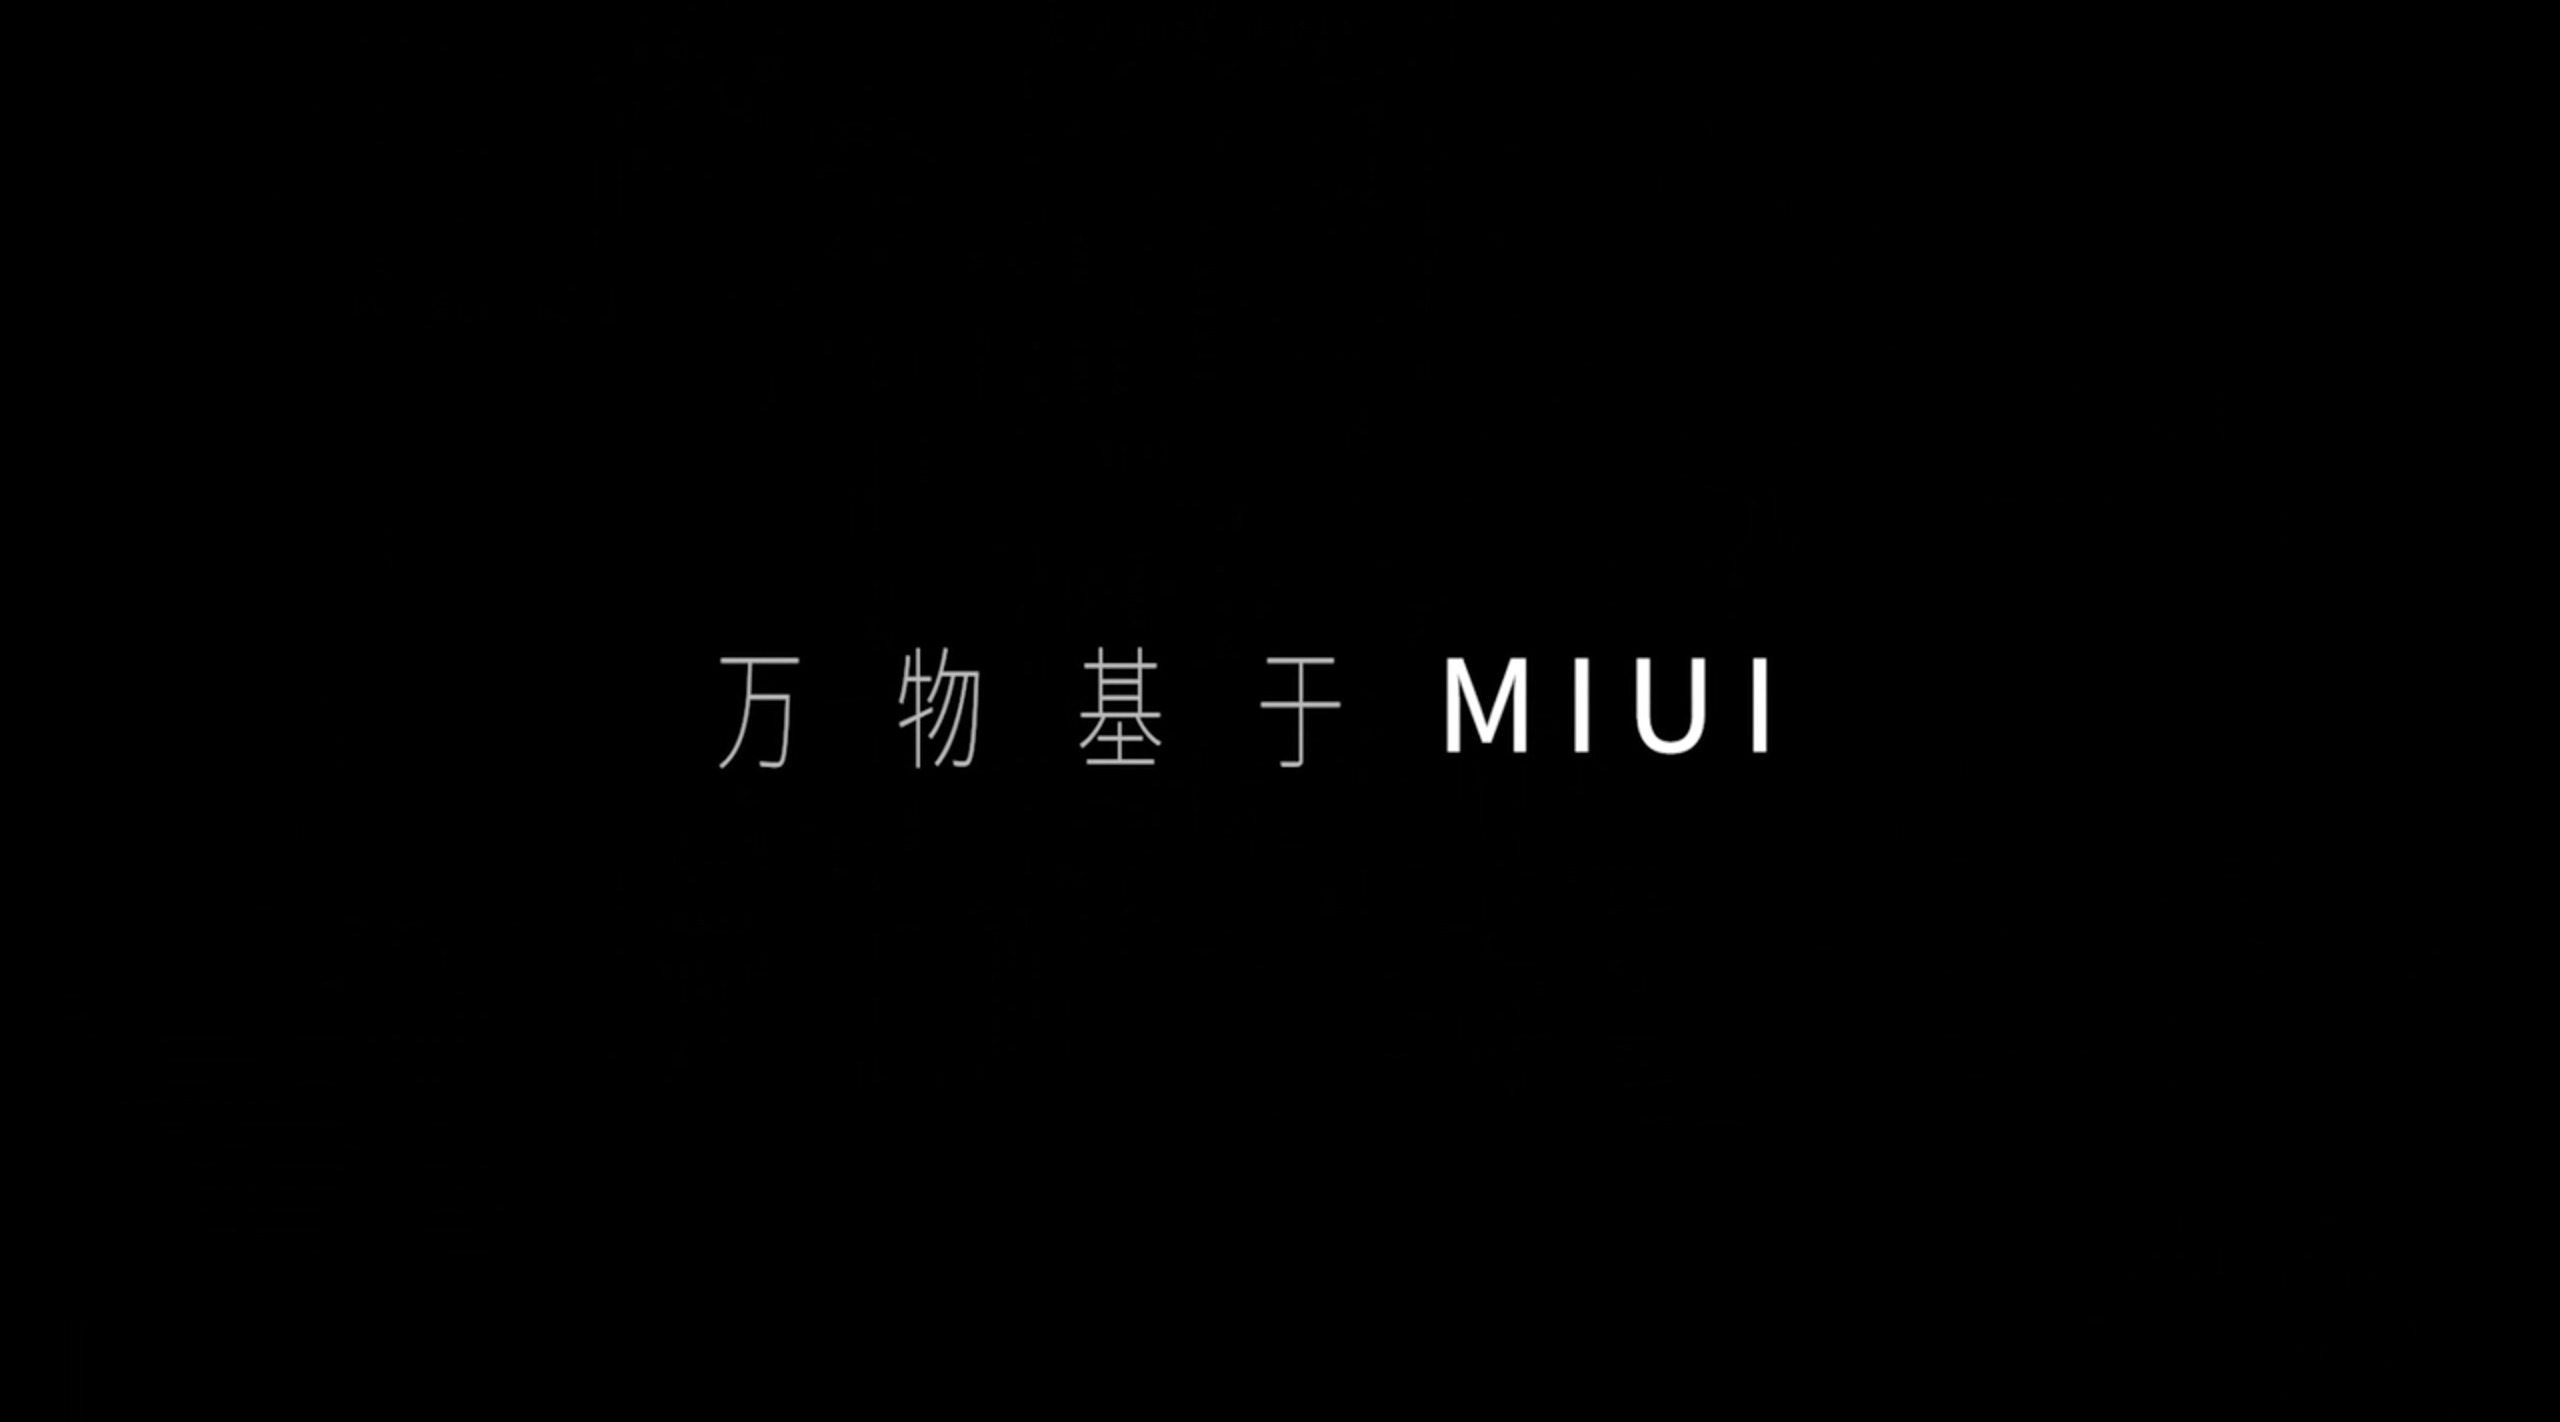 小米MIUI 9致敬工程师 